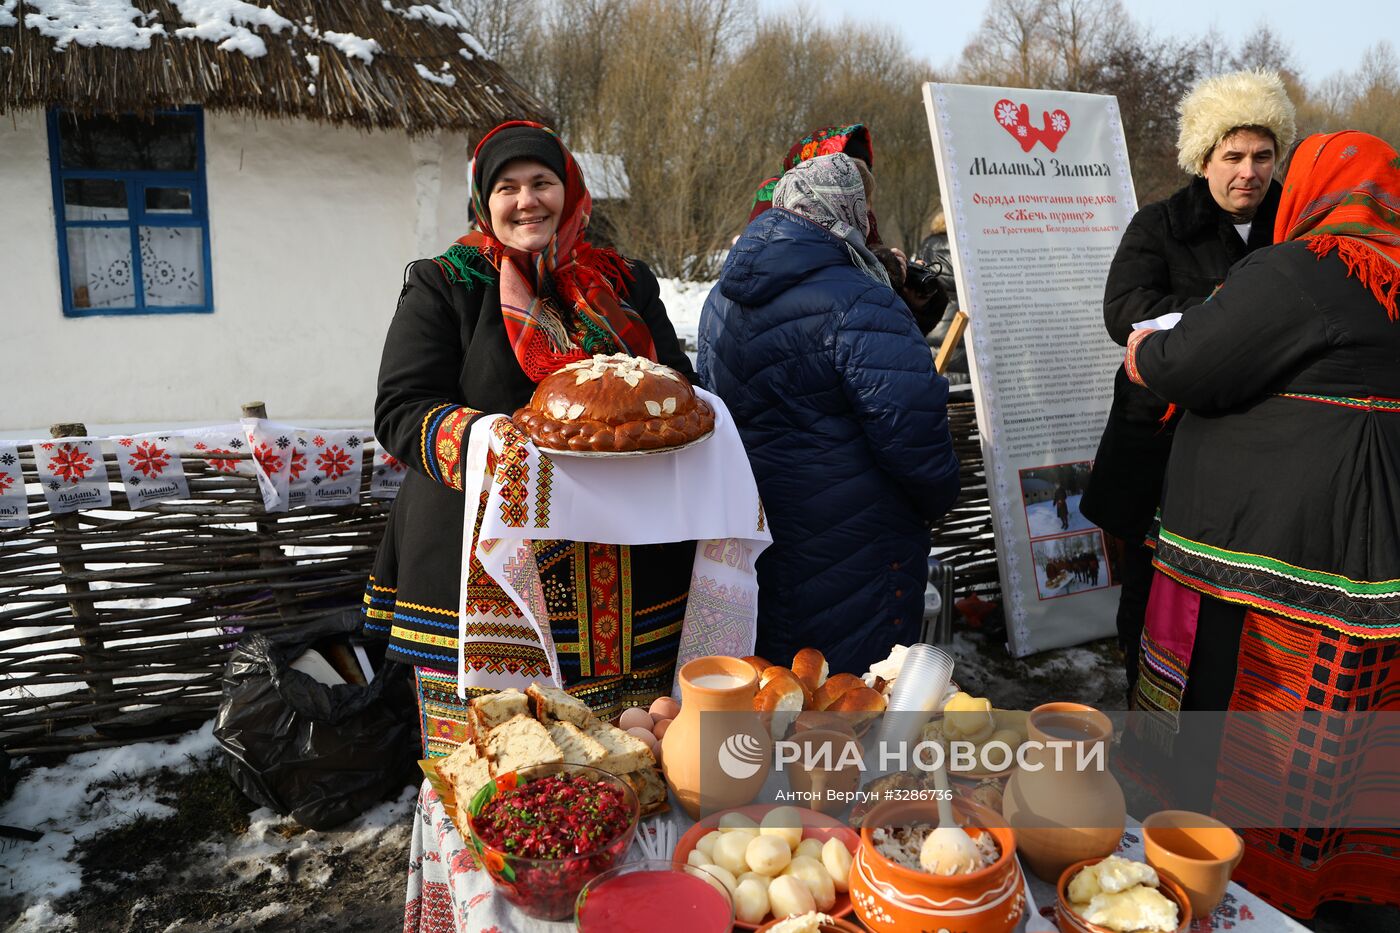 Фестиваль исторических реконструкций "Маланья" в Белгородской области